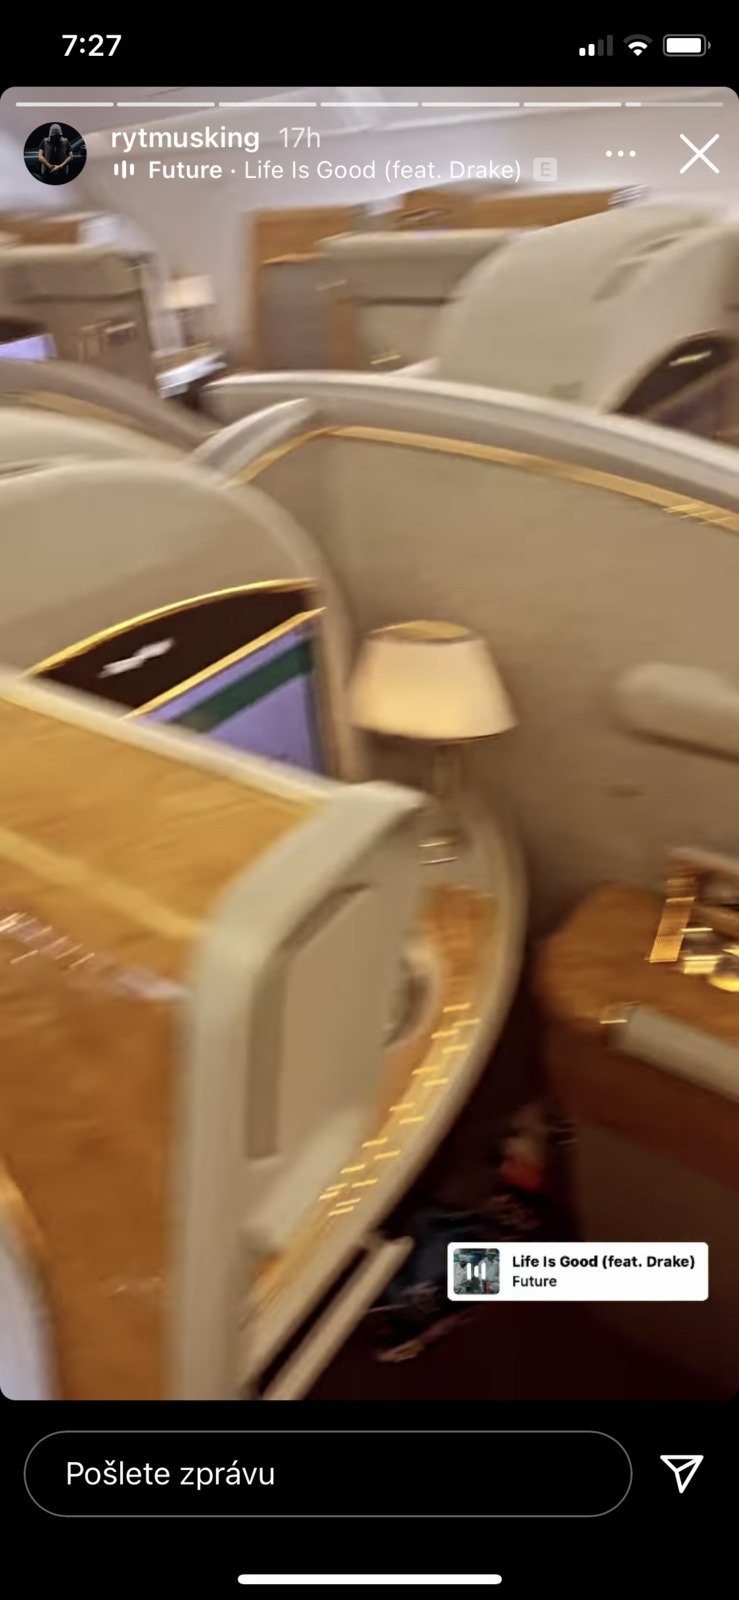 Luxusní kabina v letadle, kterou si užívali při návratu z Dubaje Jasmina Alagič s Rytmusem a synem Sanelem.